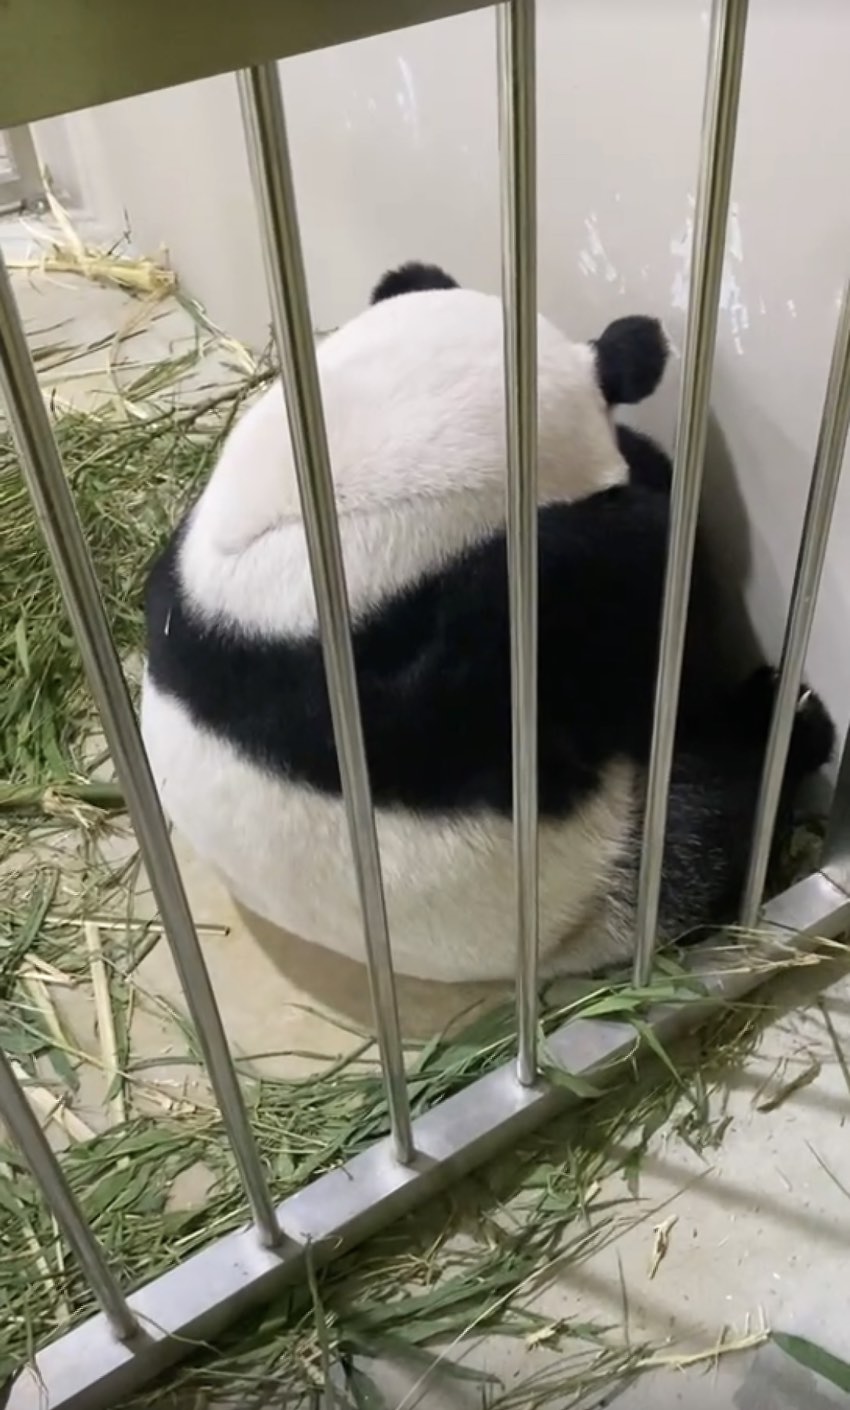 新加坡旅居大熊猫“沪宝”首次产崽 重约200克